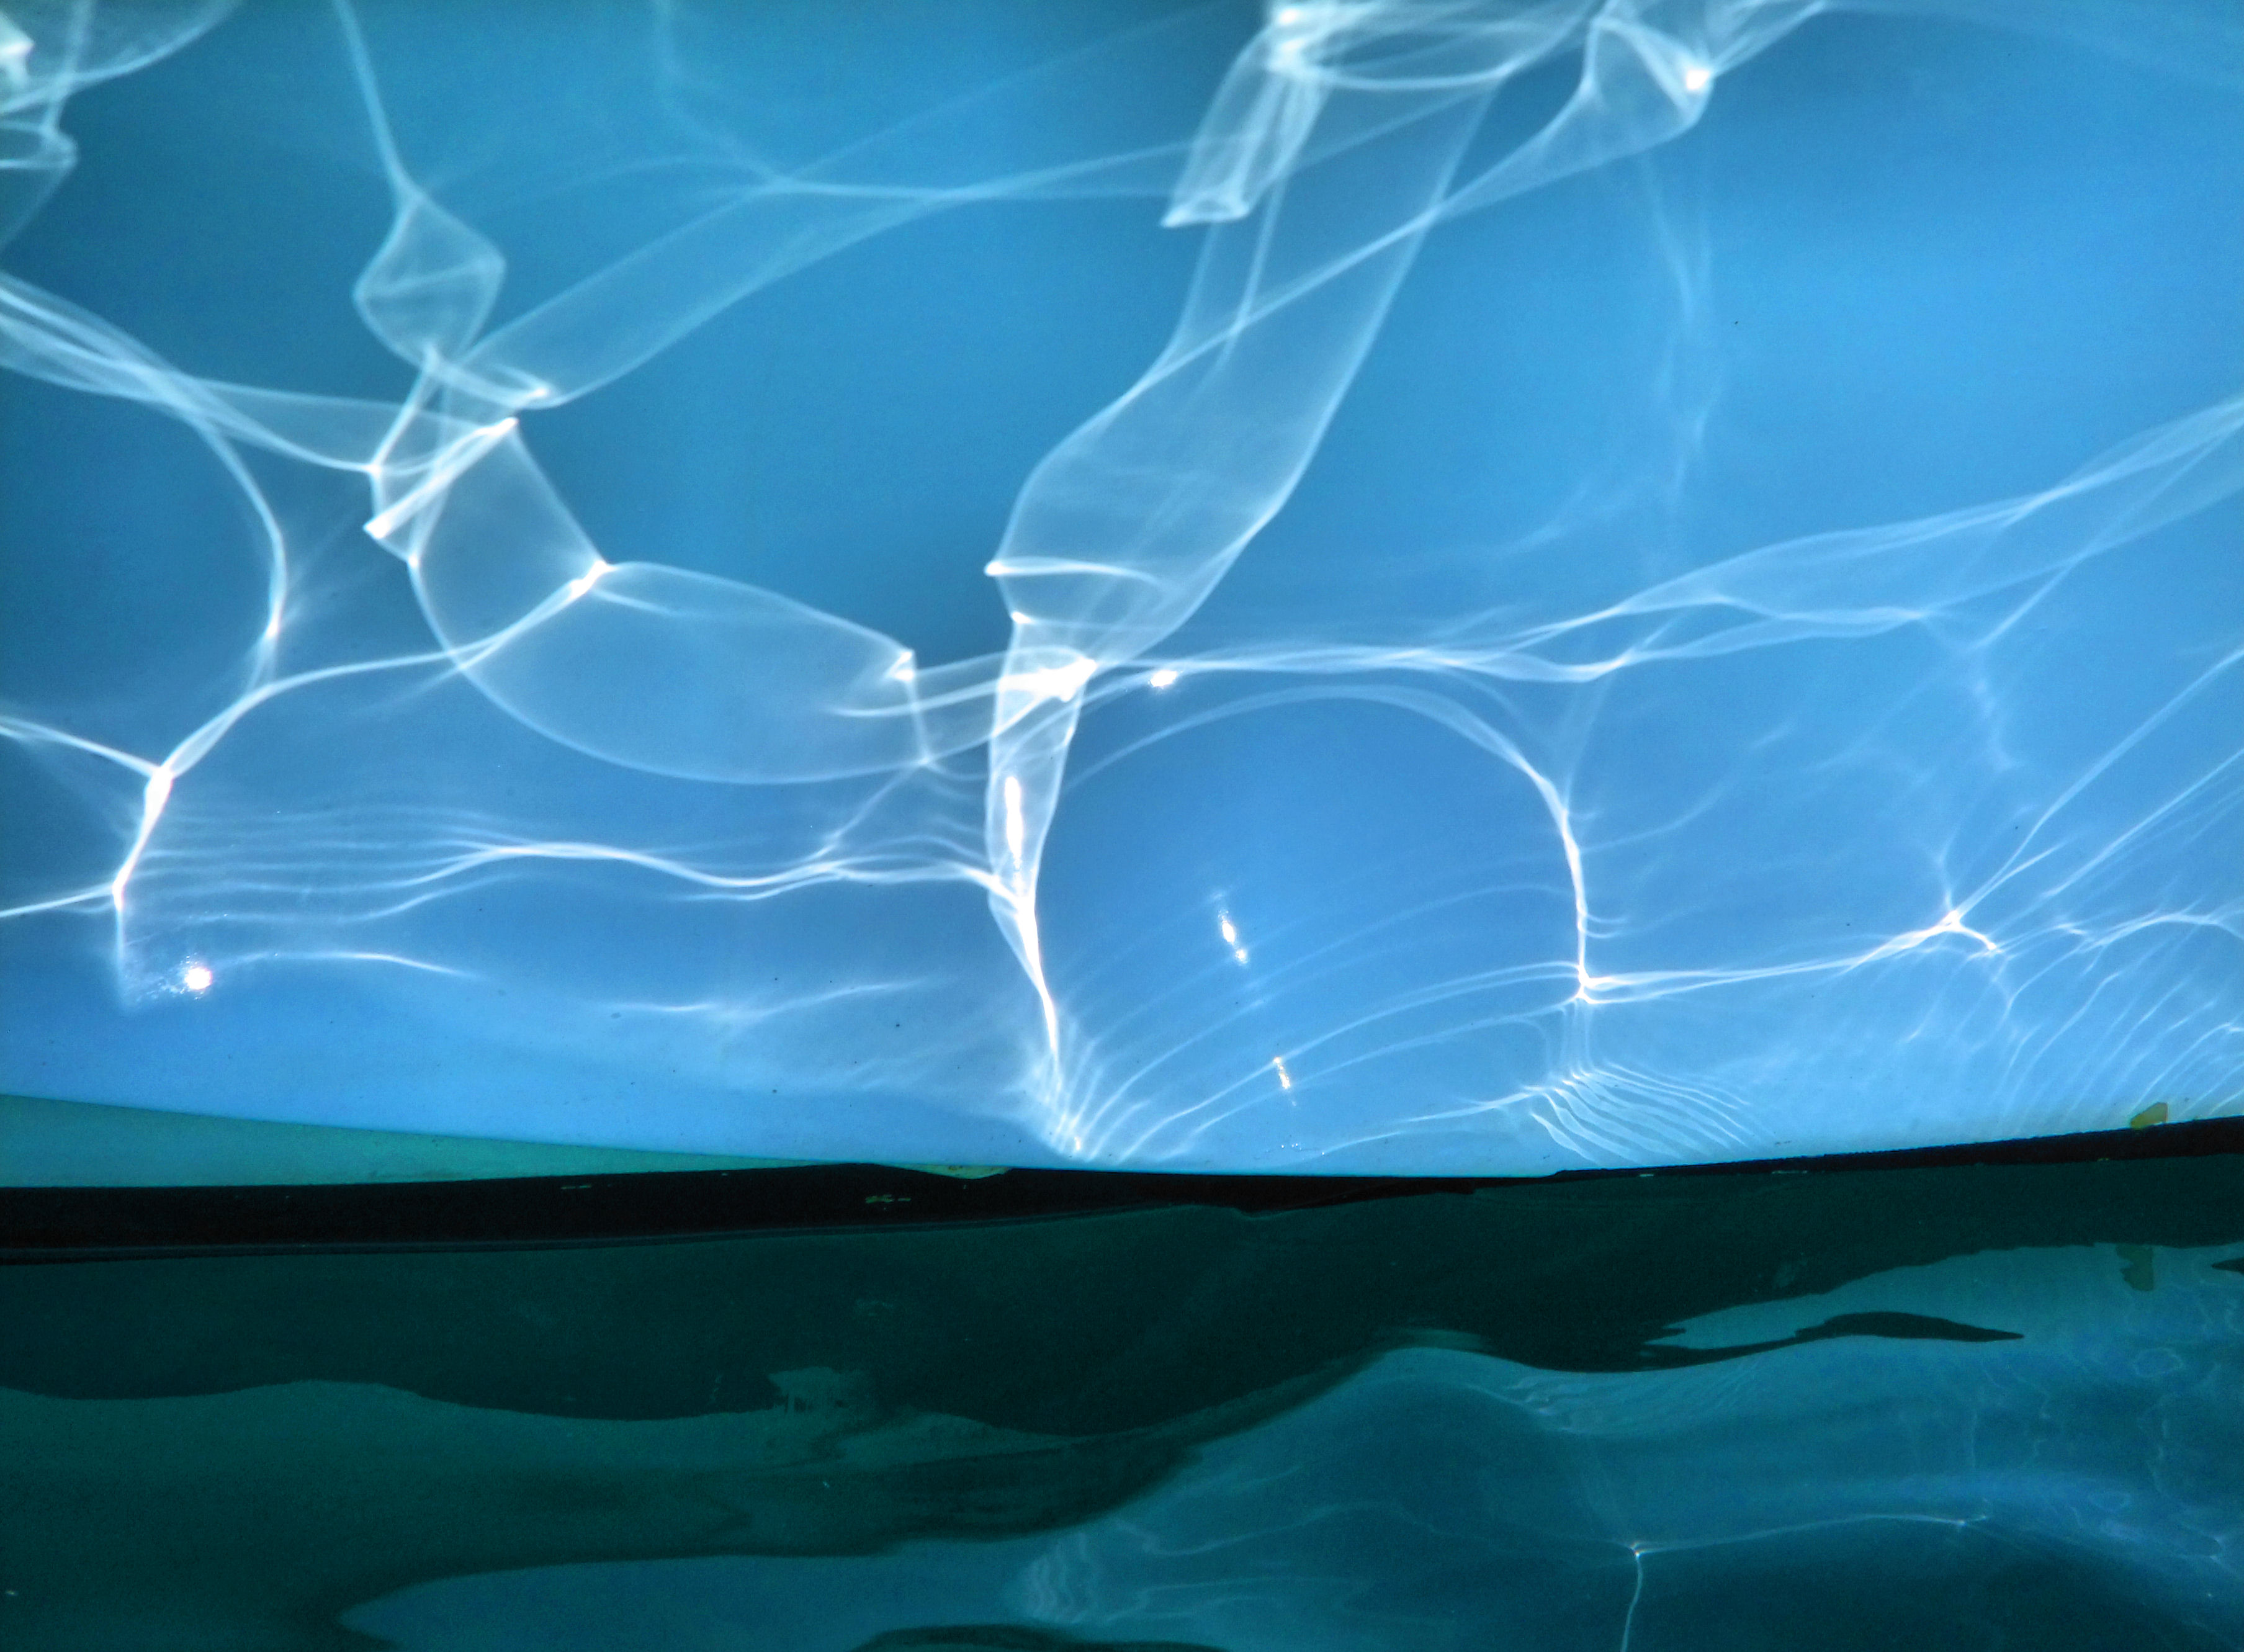 フリー写真素材 テクスチャ 背景 水 氷 ブルー 画像素材なら 無料 フリー写真素材のフリーフォト